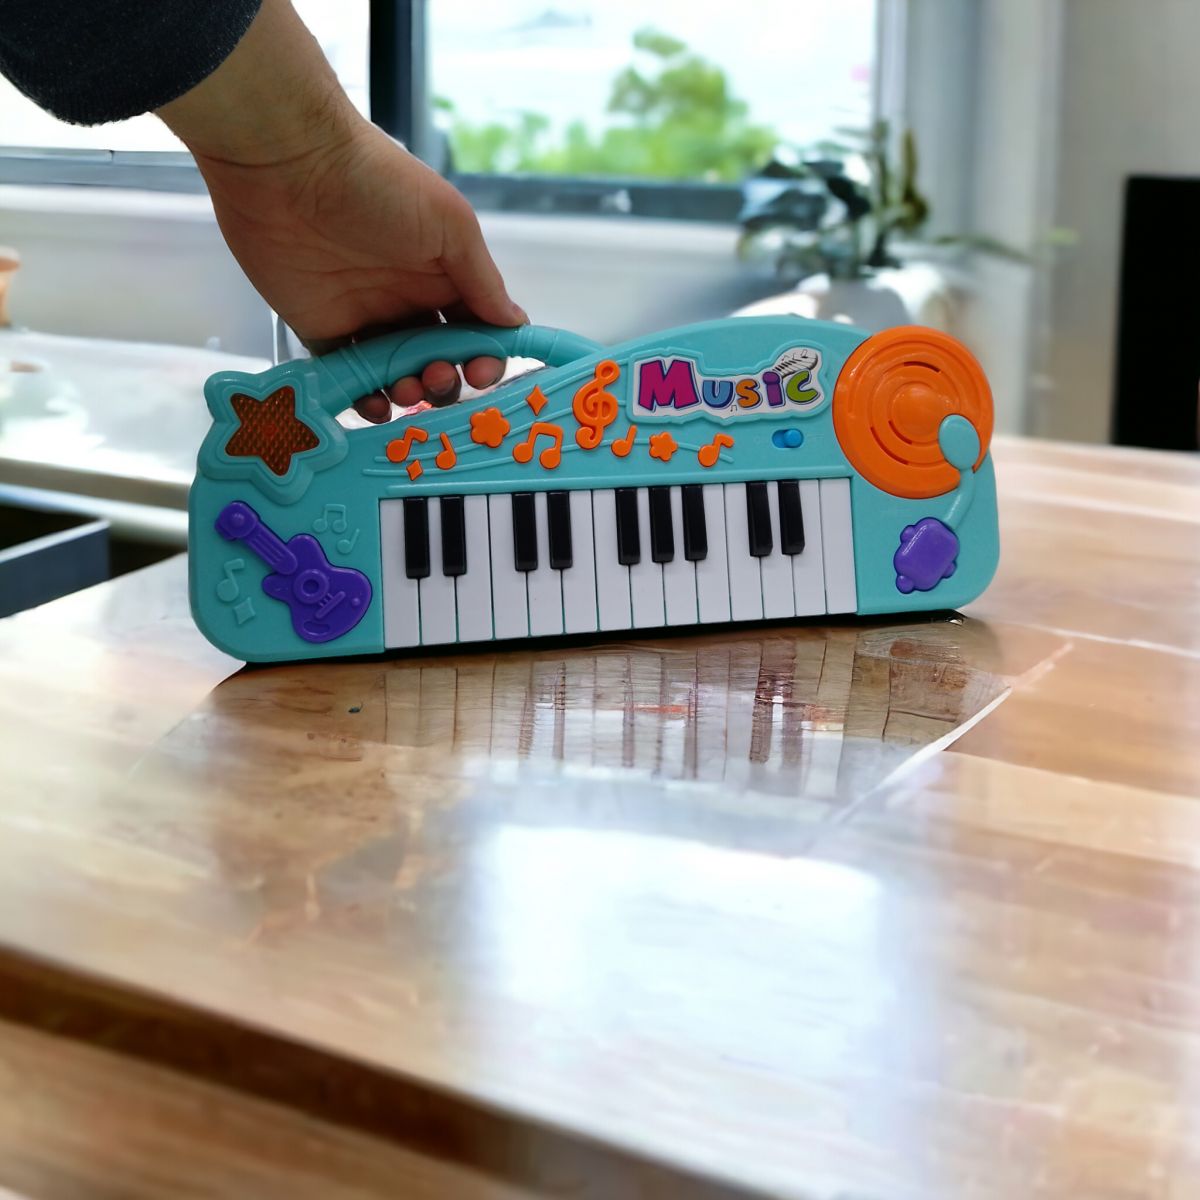 Детское пианино "Electronic Organ" (бирюзовый)